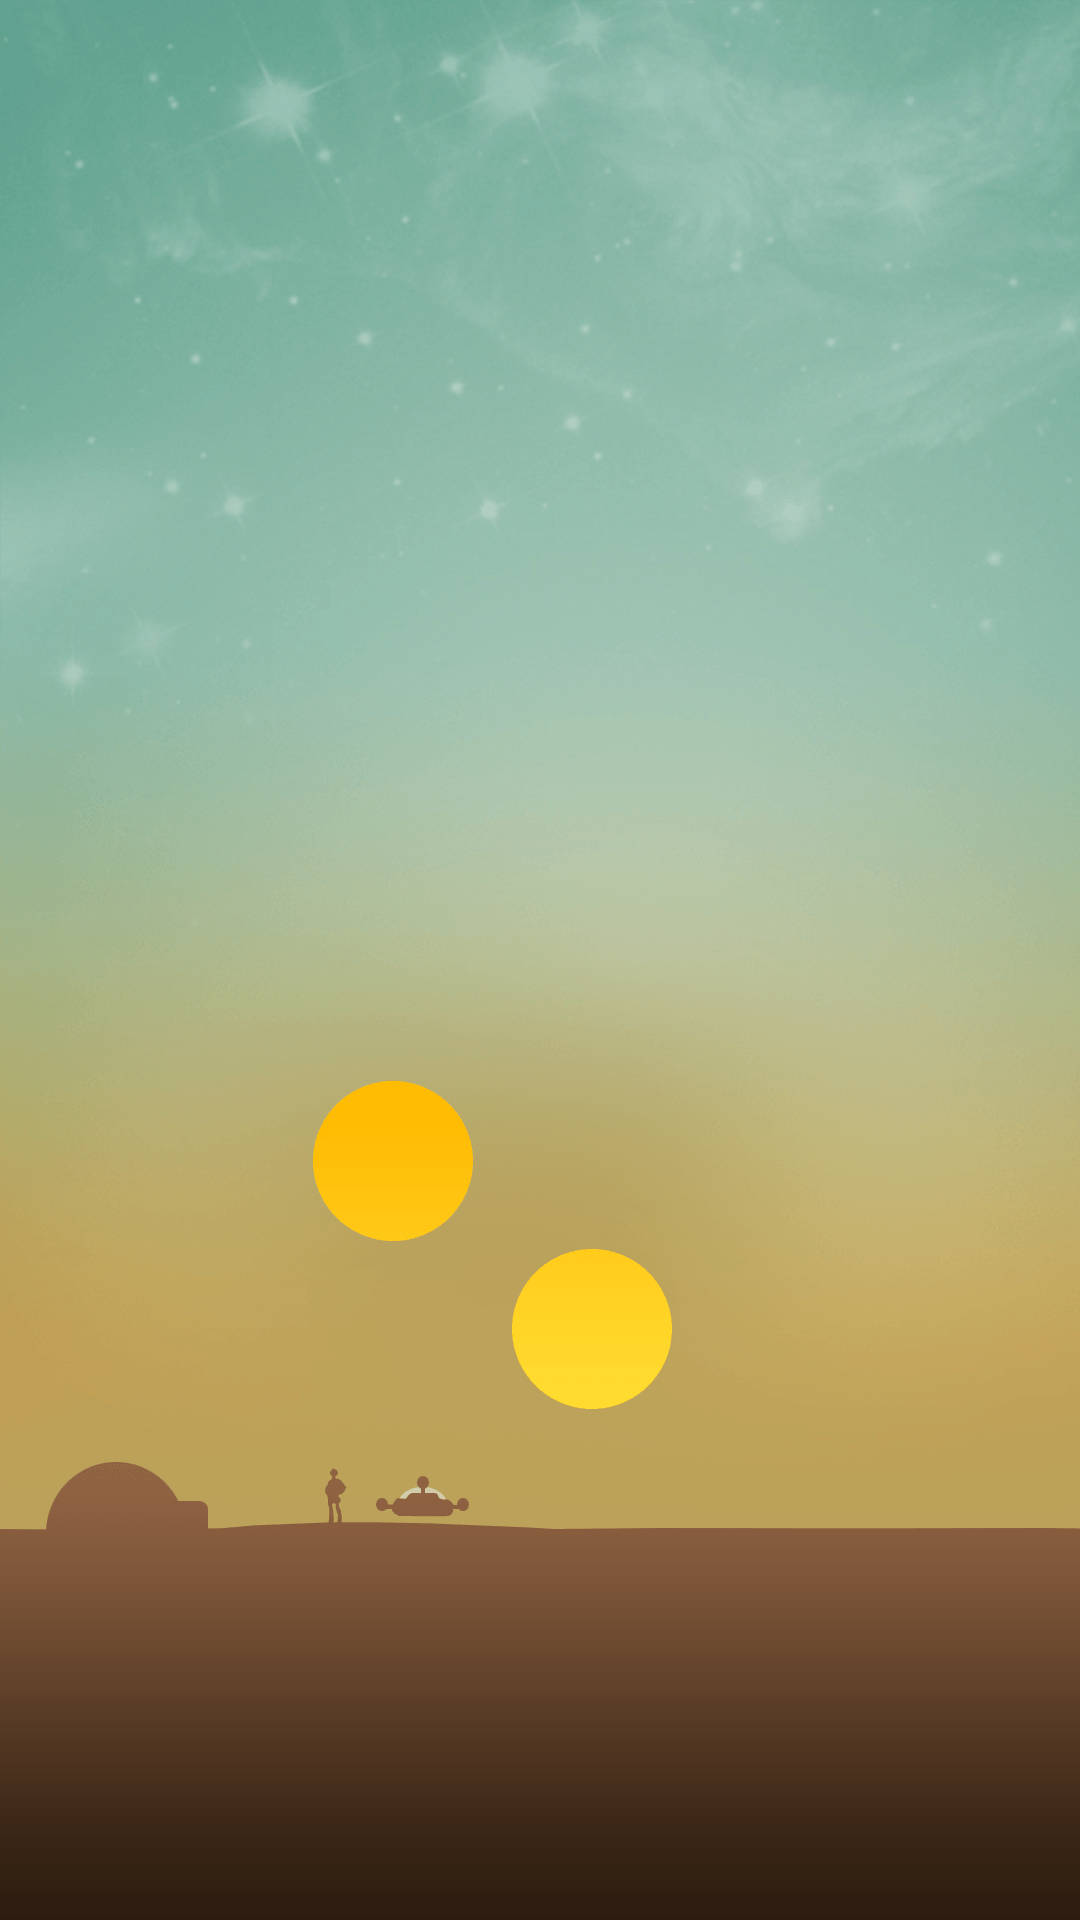 Detbästa Hd-telefon Tapetet Är Alien World Two Suns. Wallpaper